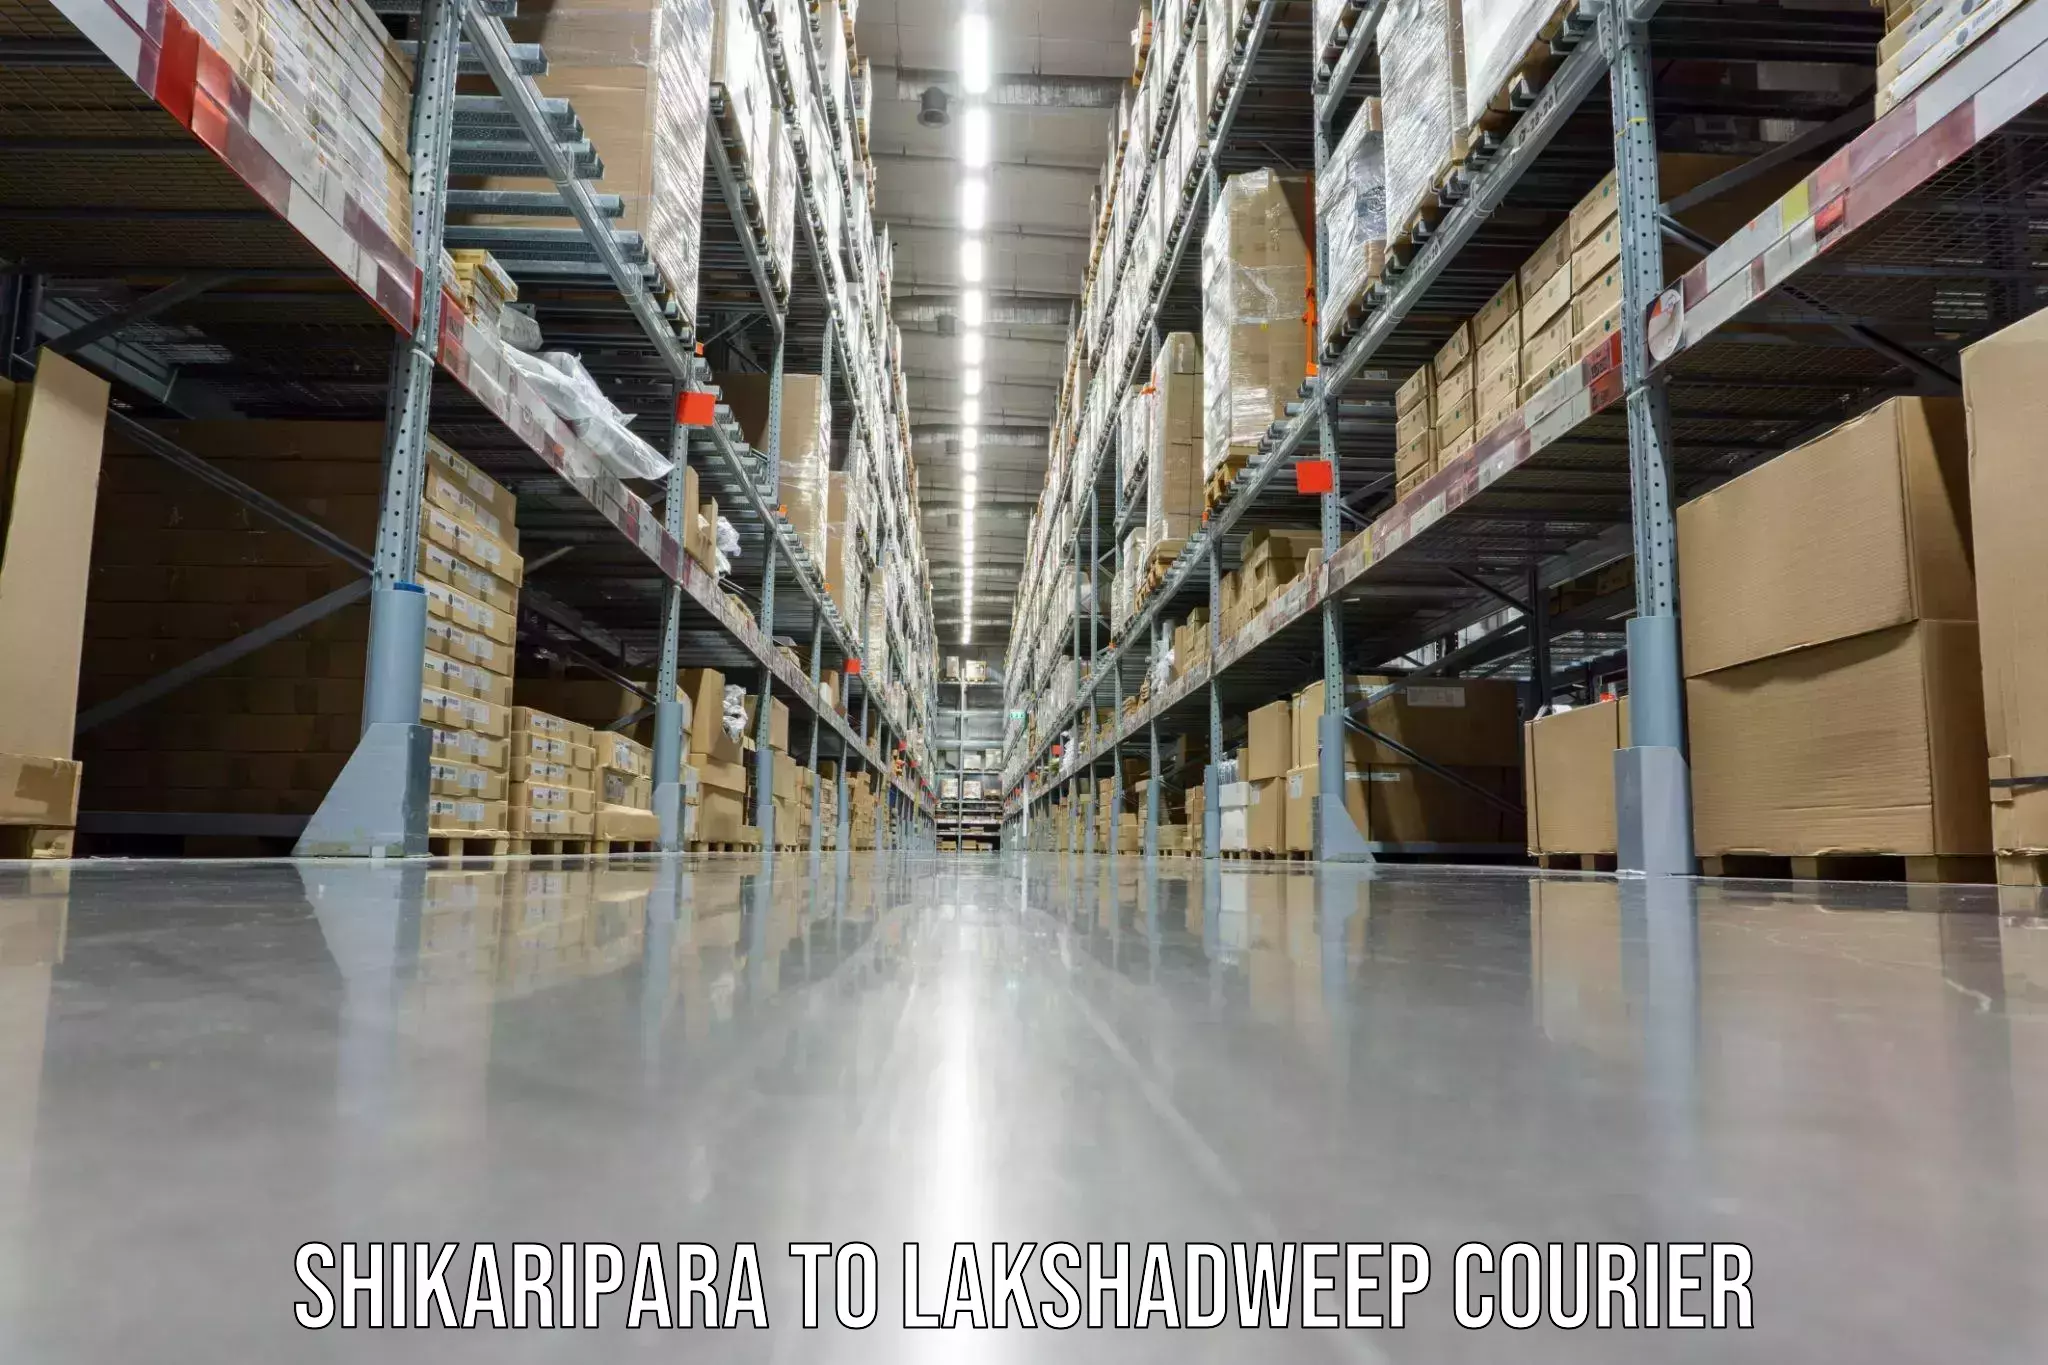 Household goods transport service Shikaripara to Lakshadweep